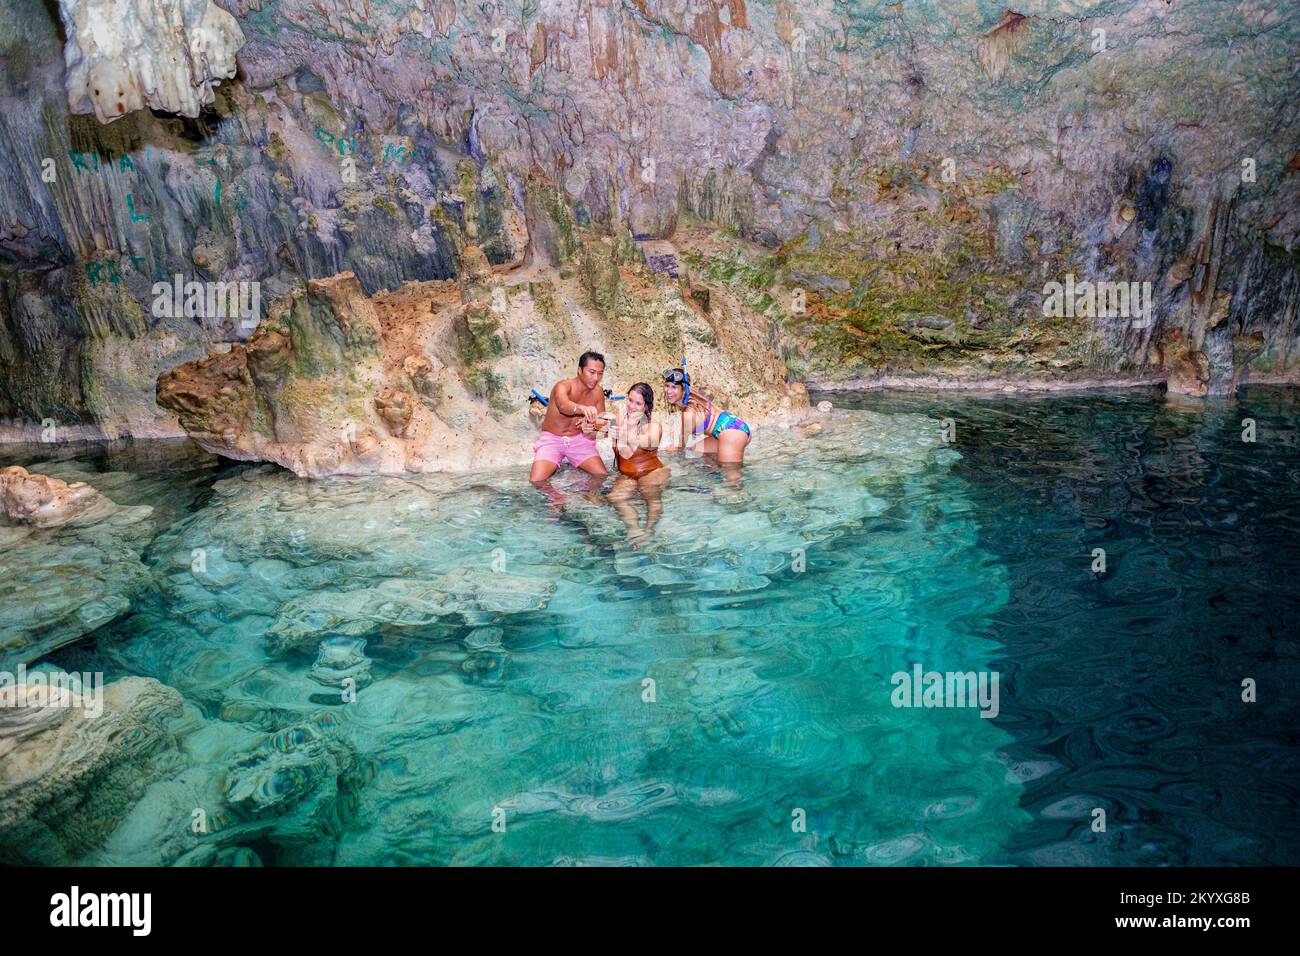 La grotte de Saturno est une merveille naturelle spectaculaire située à  environ 20km de Varadero, Cuba.Il possède un lac d'eau douce limpide d'une  profondeur de 22 mètres Photo Stock - Alamy